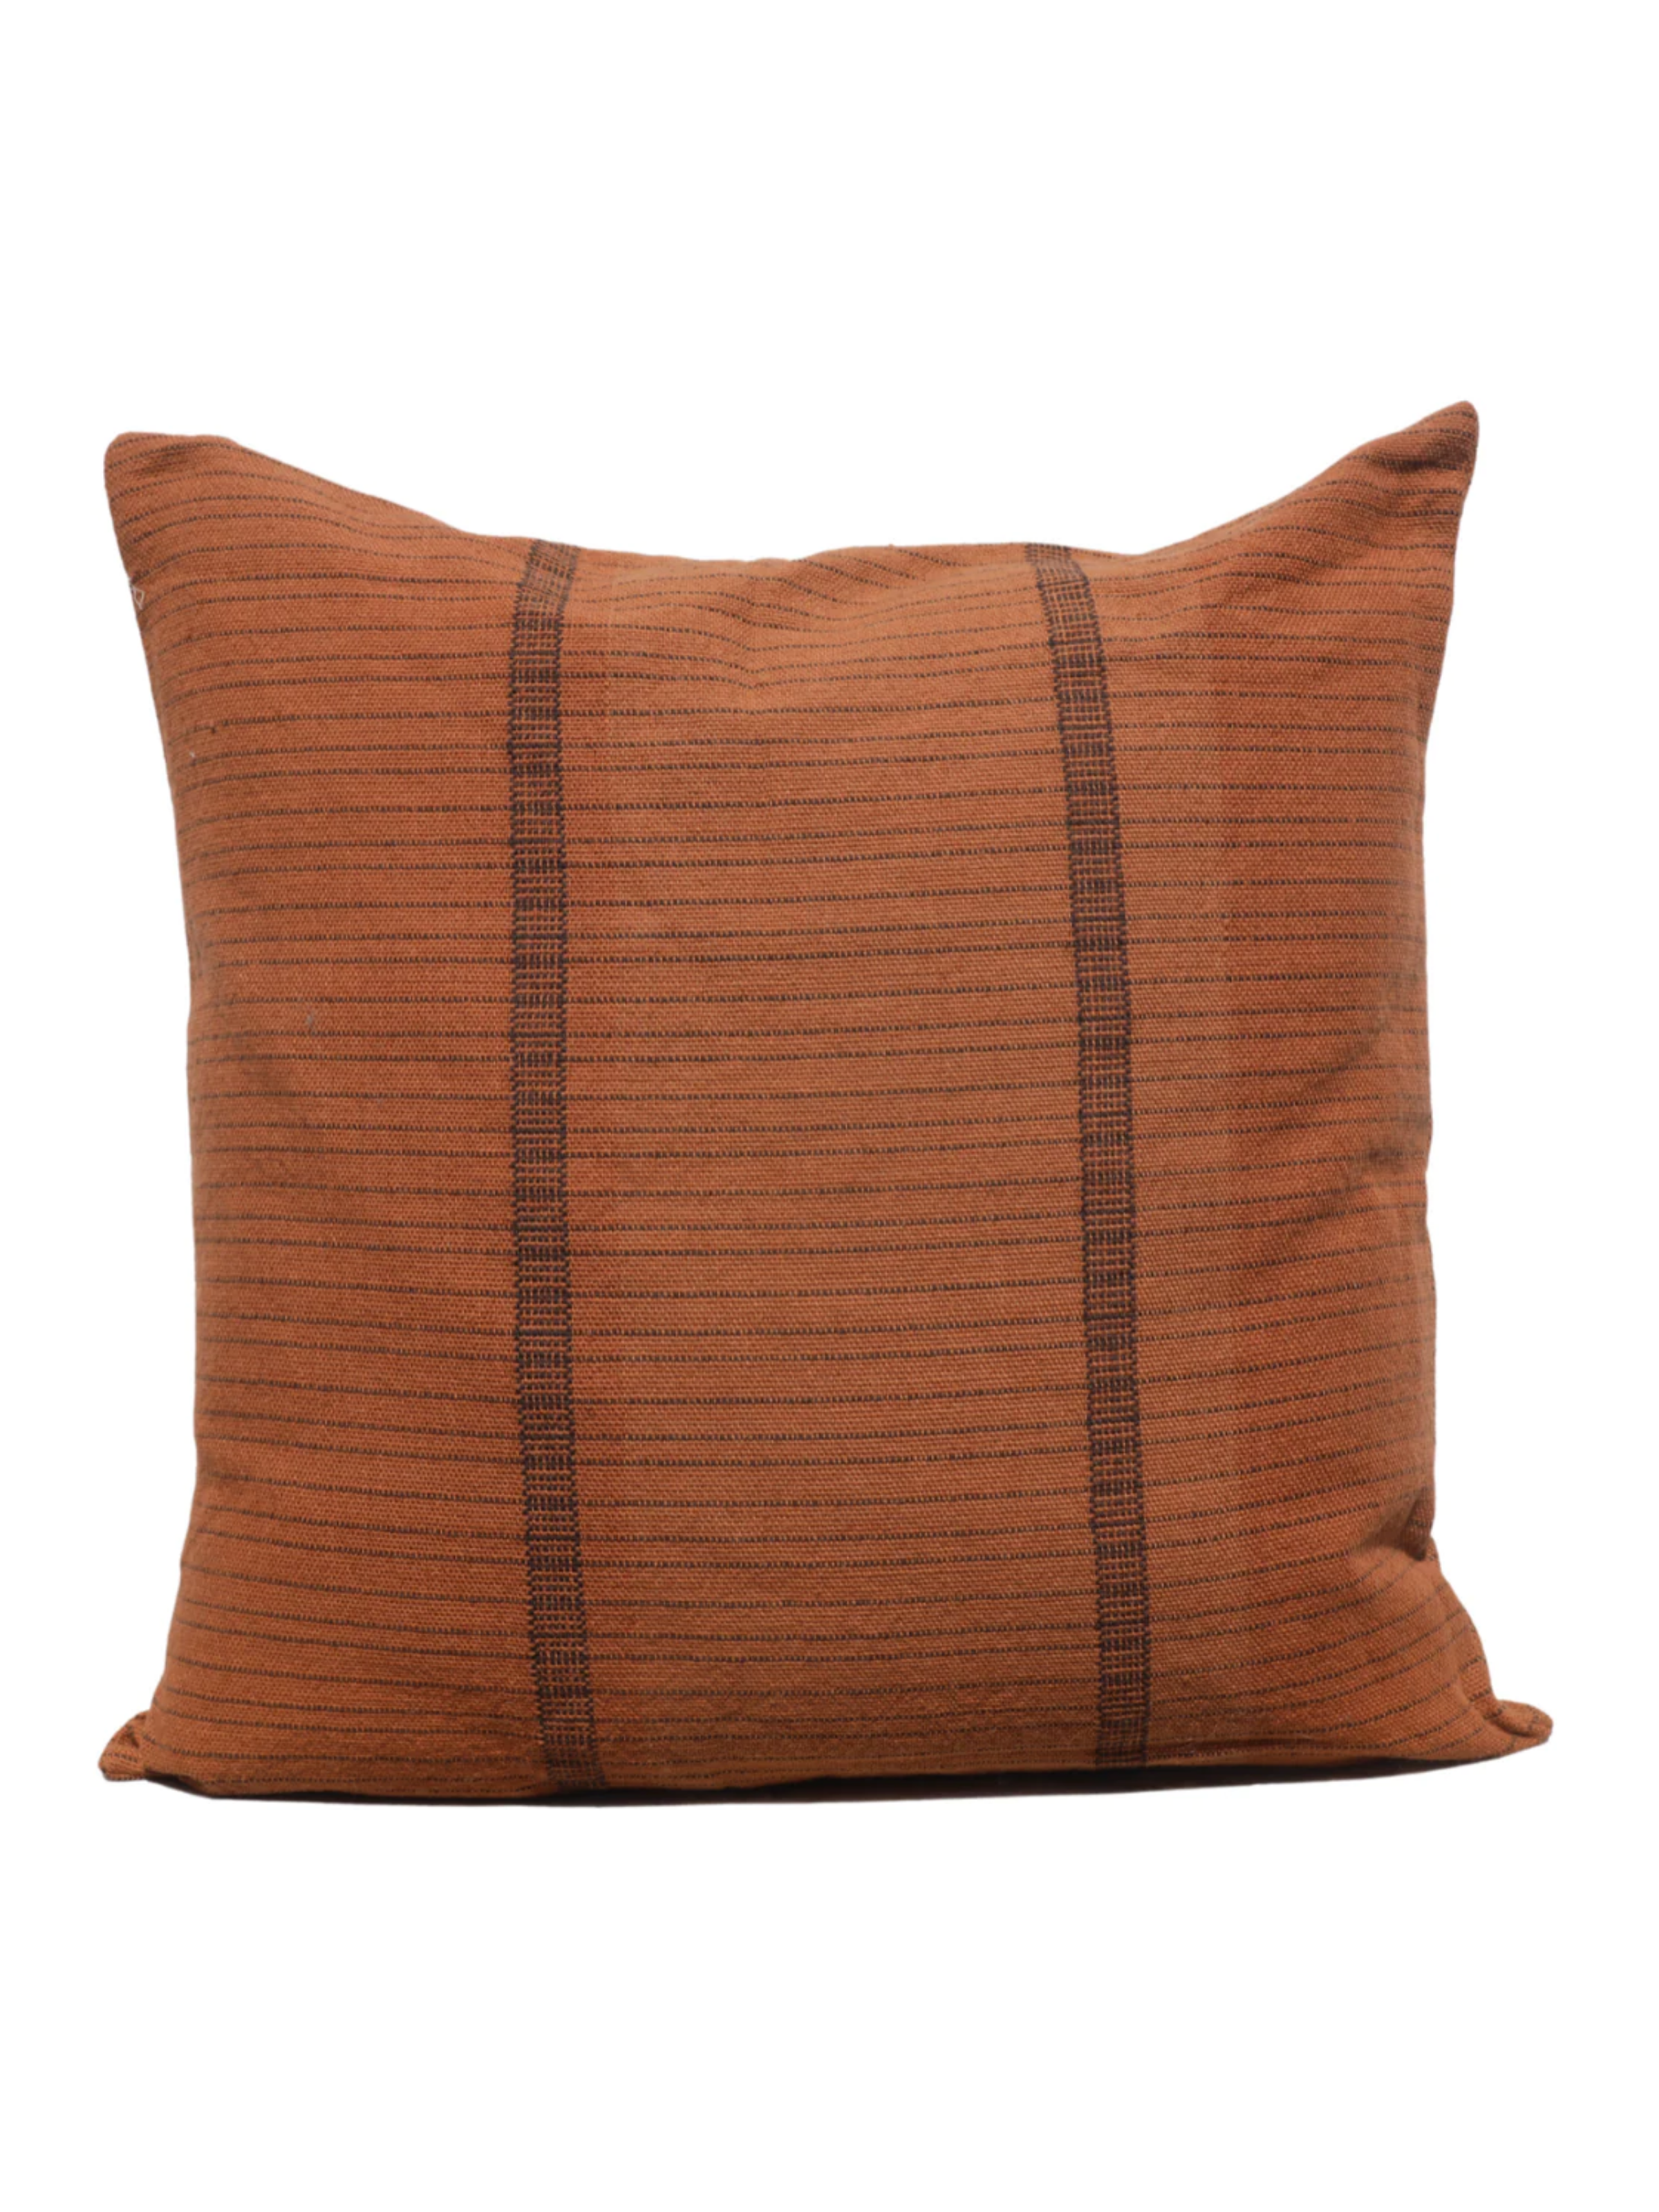 BK Cinnamon / Espresso Handwoven Pillow Cover